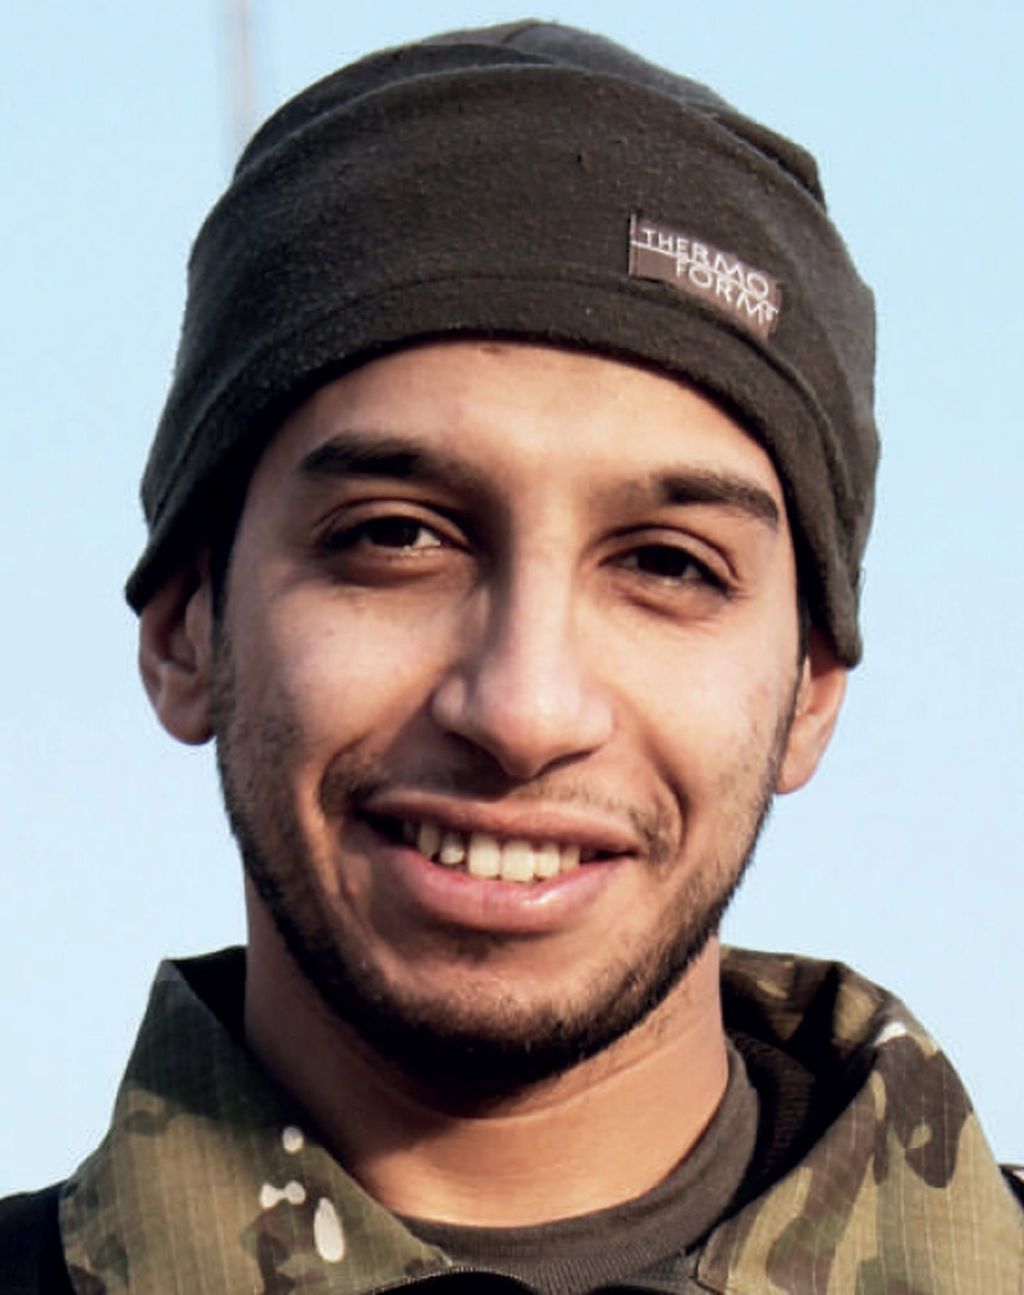 Se cree que Abdelhamid Abaaoud y un cómplice habían planeado atacar La Defensa el 18 o 19 de noviembre. (ARCHIVO)